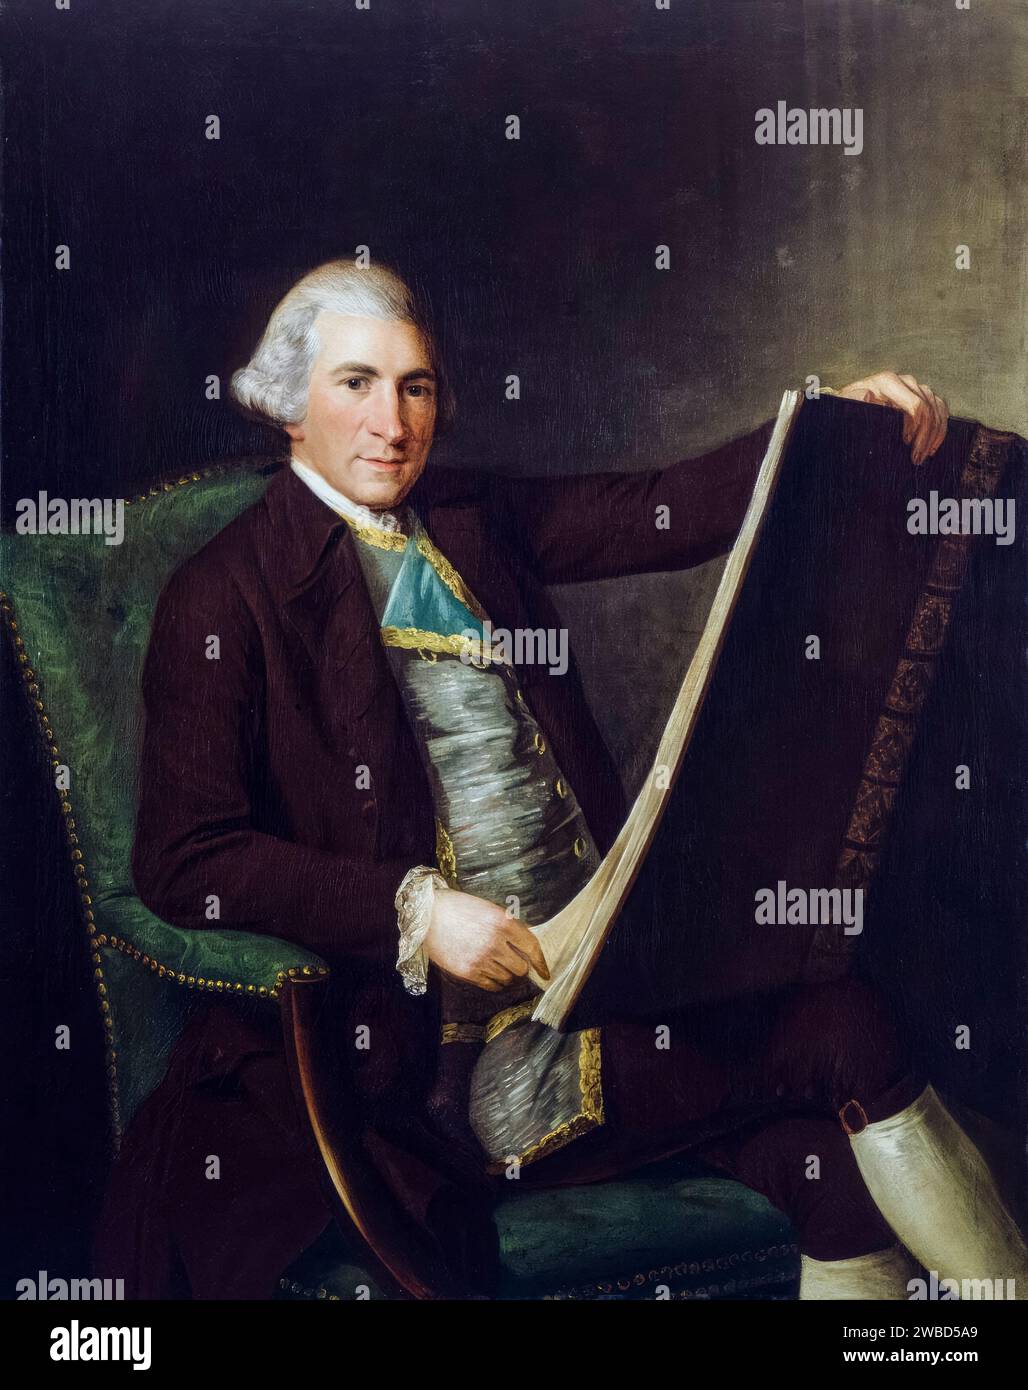 Robert Adam (1728-1792), architecte néo-classique britannique, architecte d'intérieur et designer de meubles, portrait à l'huile sur toile de George Willison (attribué), 1770-1775 Banque D'Images